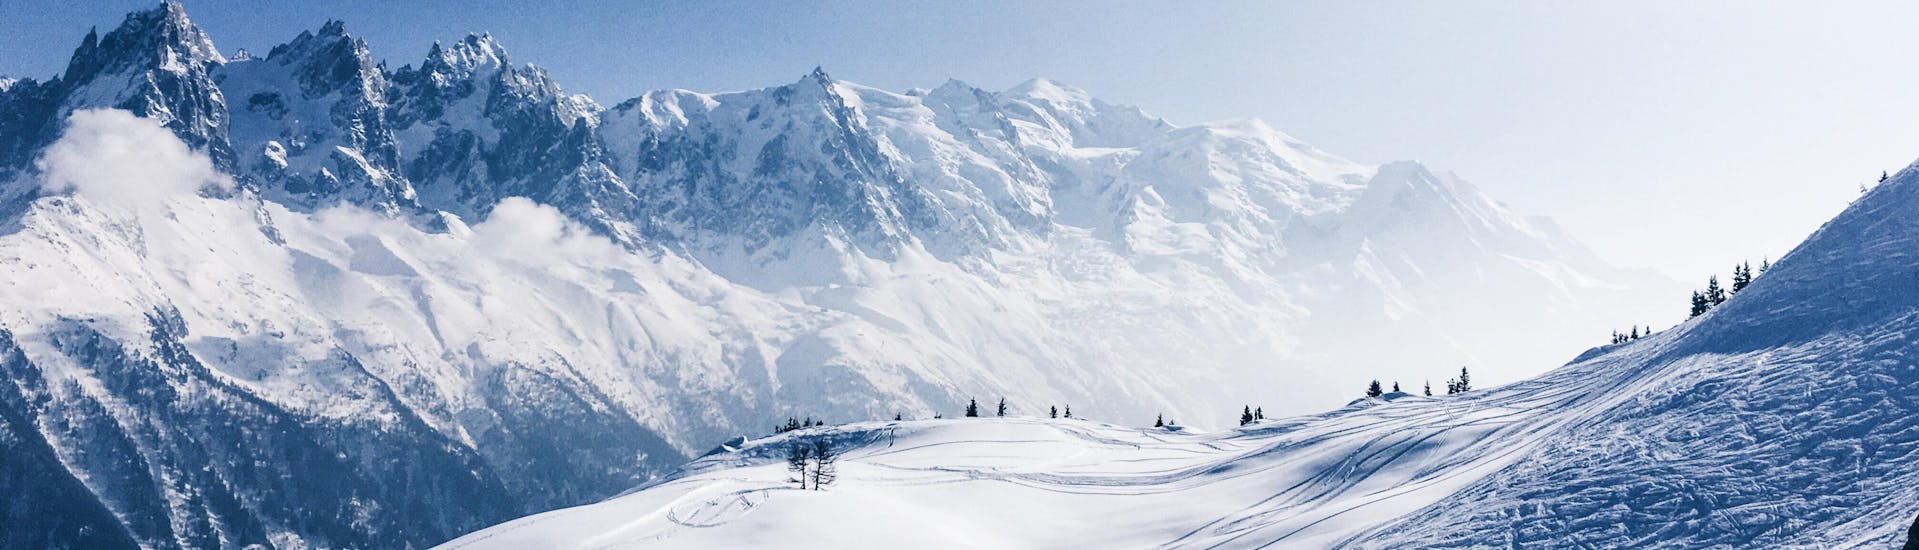 Vue sur le paysage alpin enneigé d'Argentière, où les écoles de ski locales proposent leurs cours de ski.